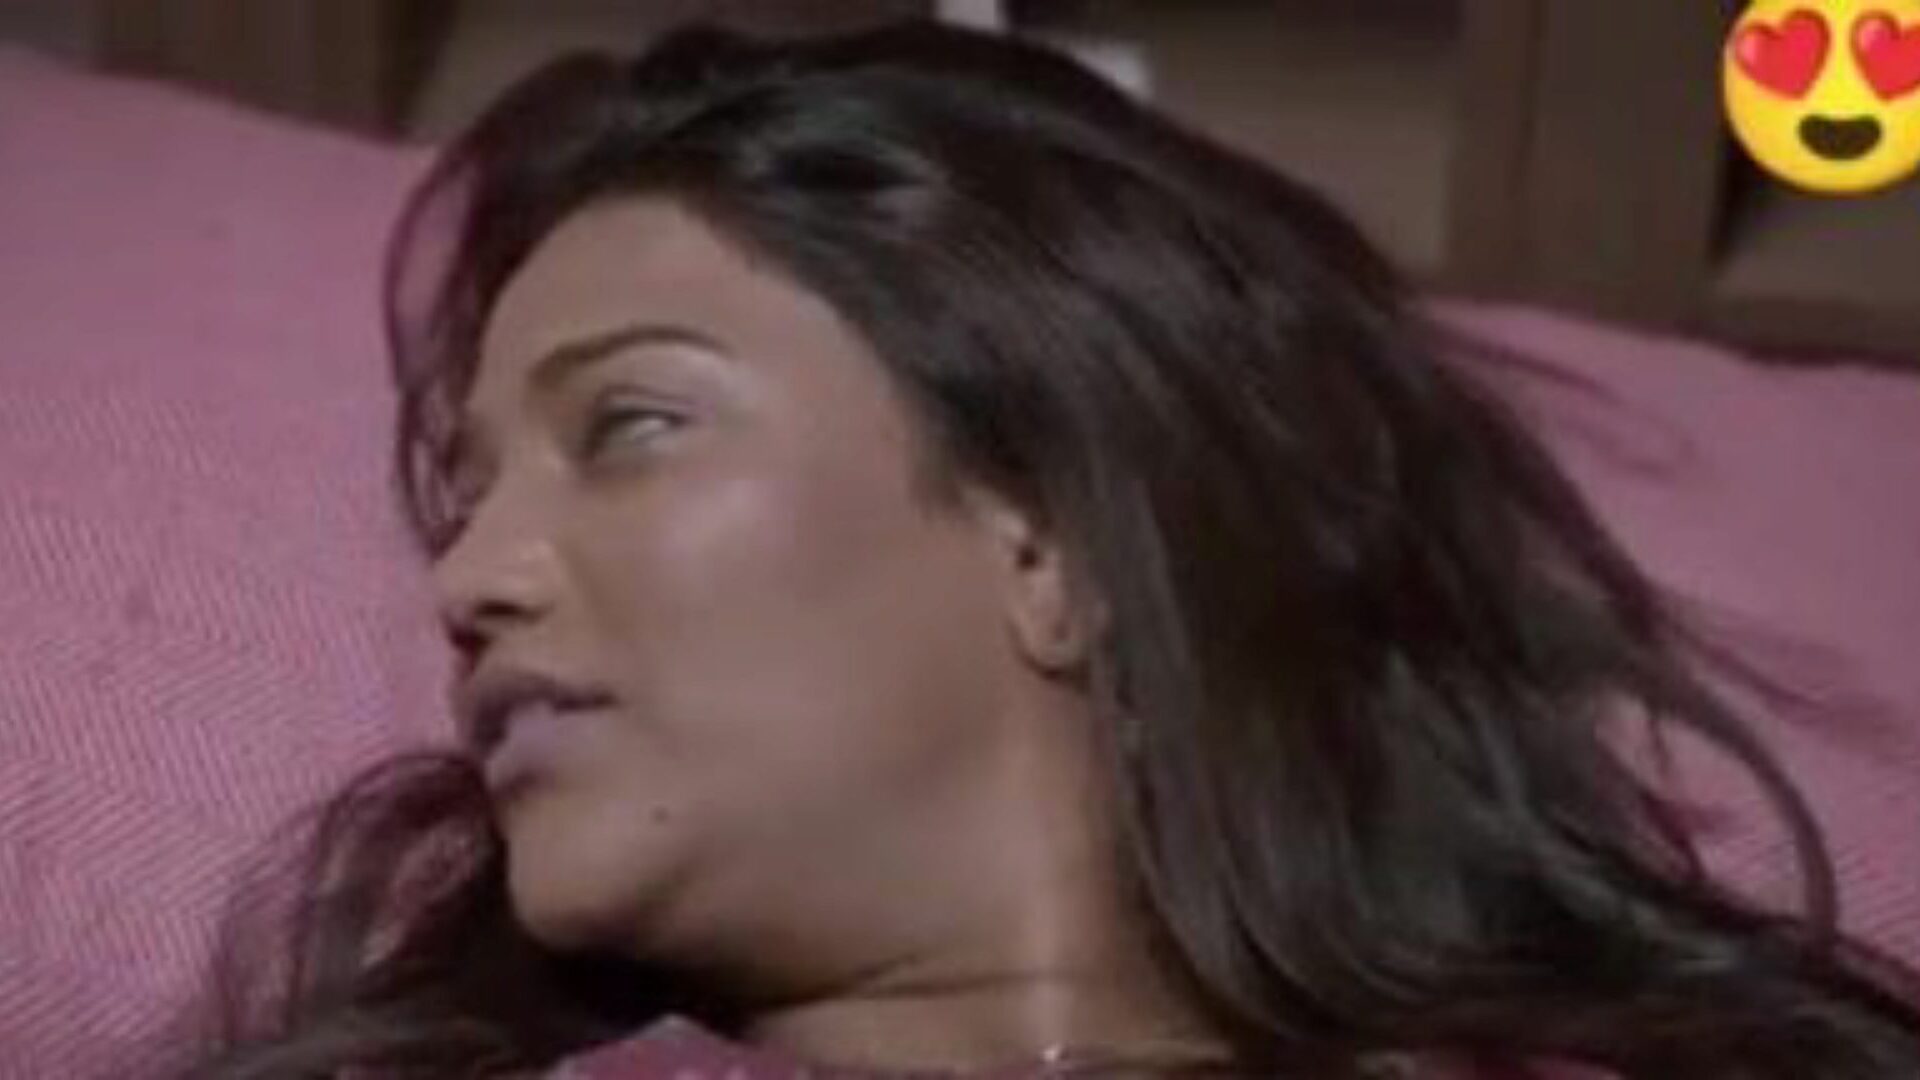 dobbel dhamaka saree sex, gratis indisk porno da: xhamster se dobbel dhamaka saree sex film på xhamster, den enorme samleie tube nettressurs med massevis av gratis for alle indiske nye sex xxx & hindi pornografi film scener